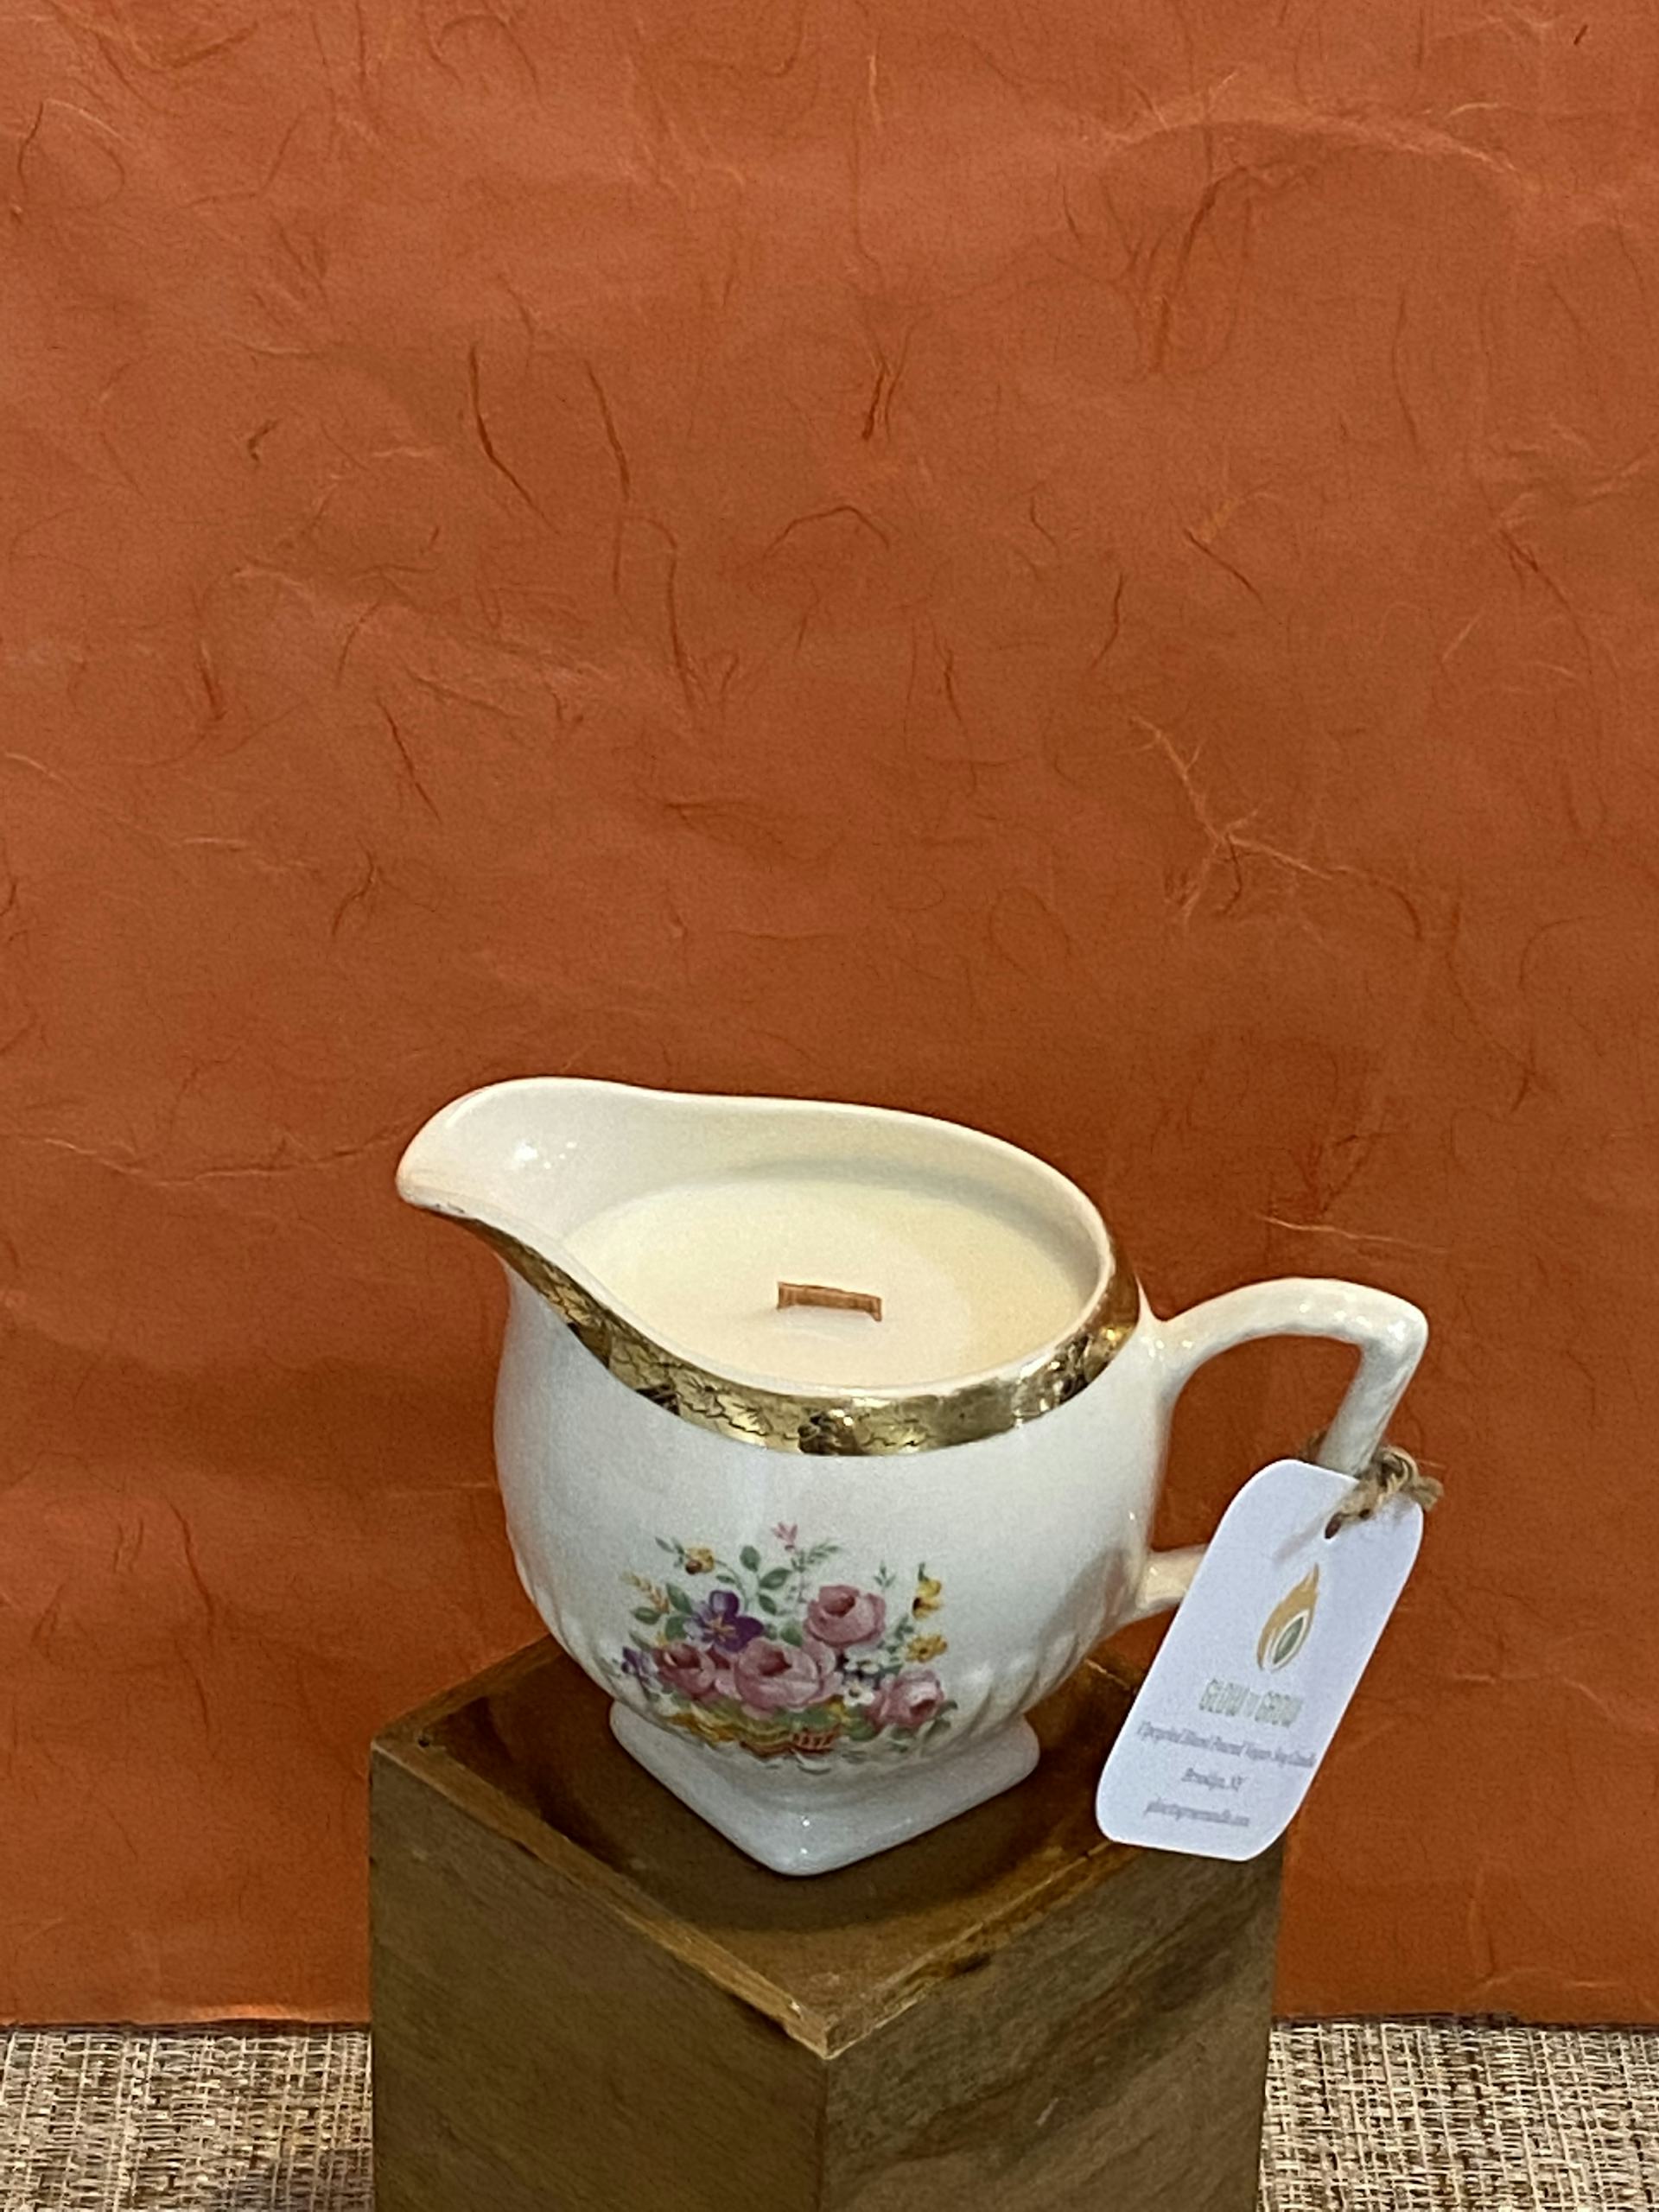 Product Image: Seasonal Spring Candle - Medium